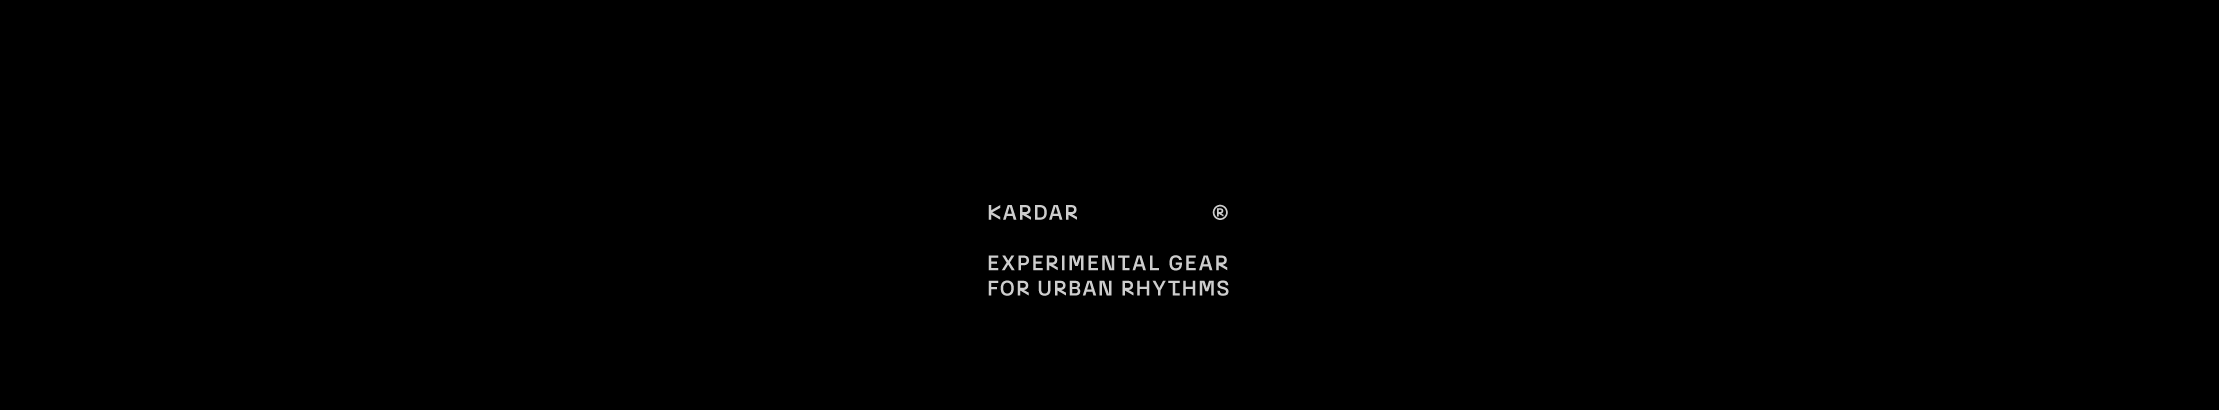 KARDAR DESART's profile banner